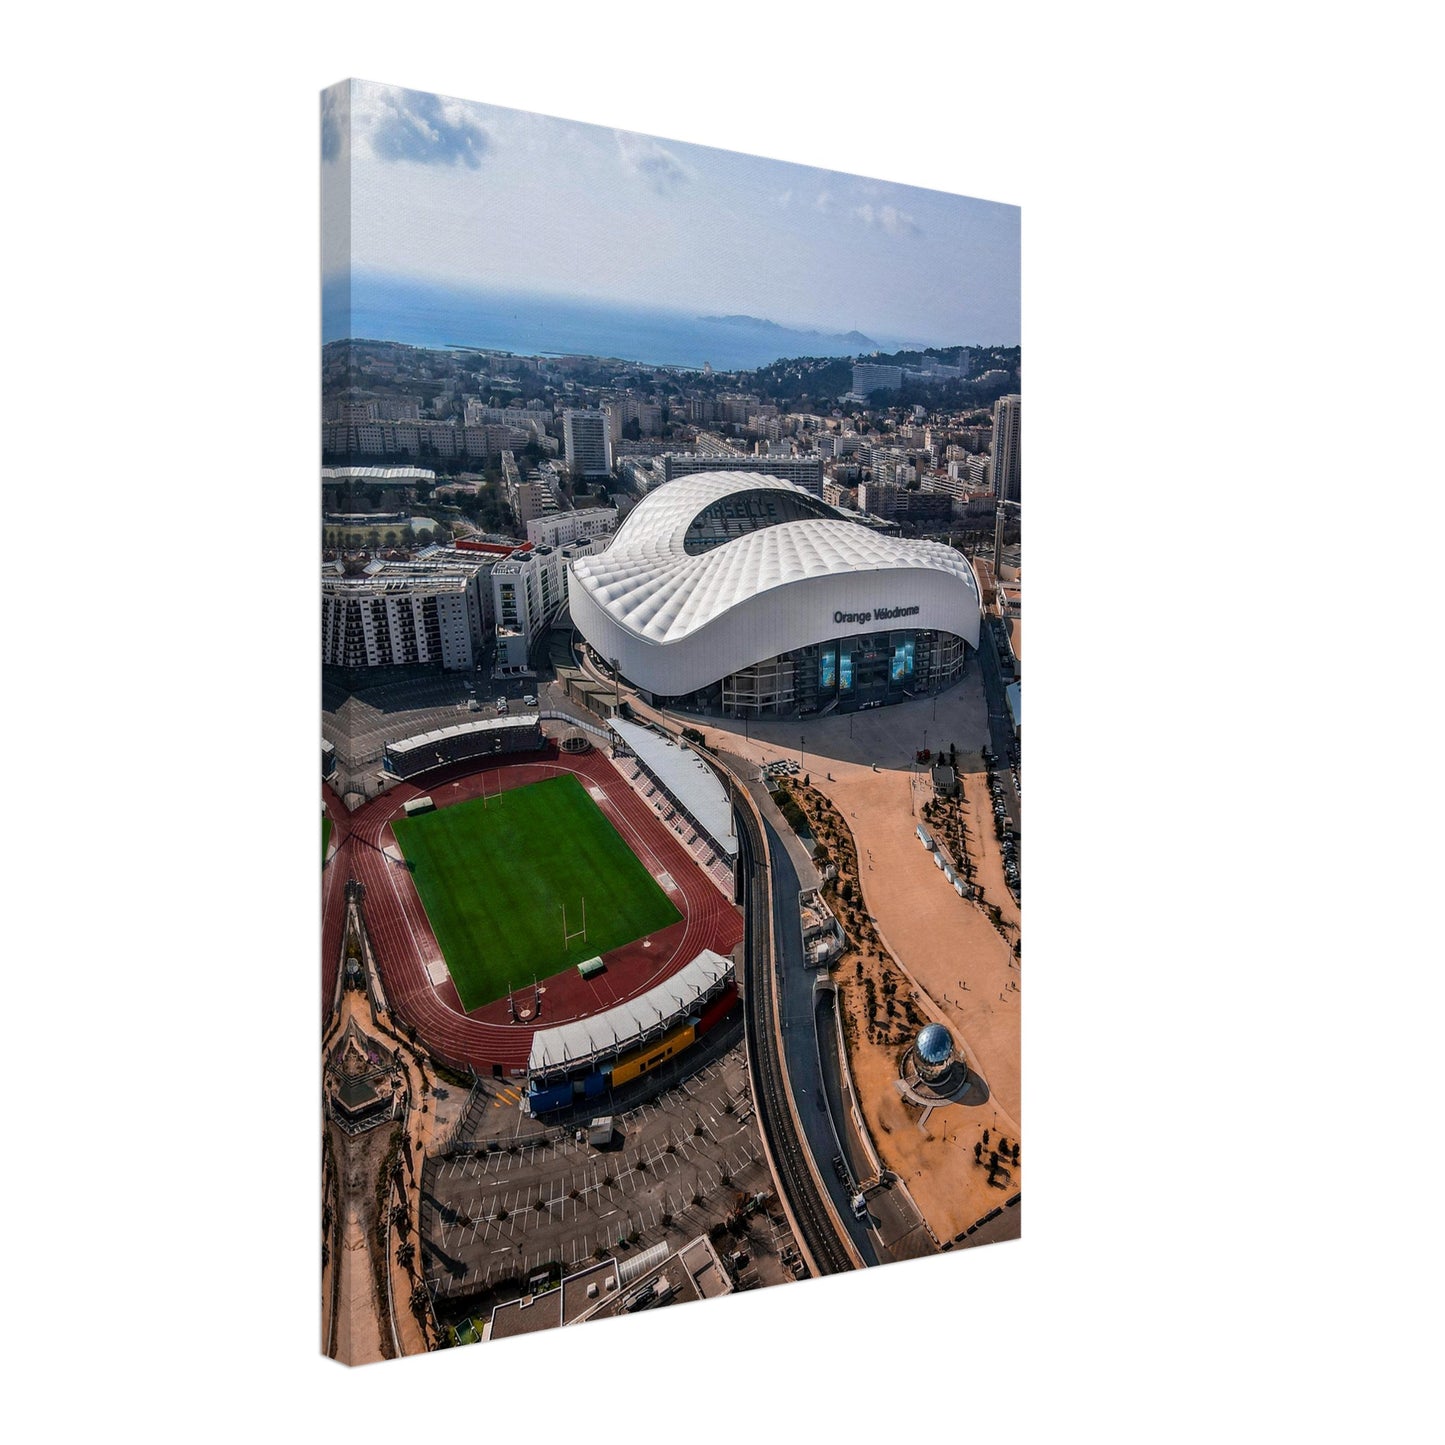 Orange Vélodrome,Olympique de Marseille Stadium Canvas